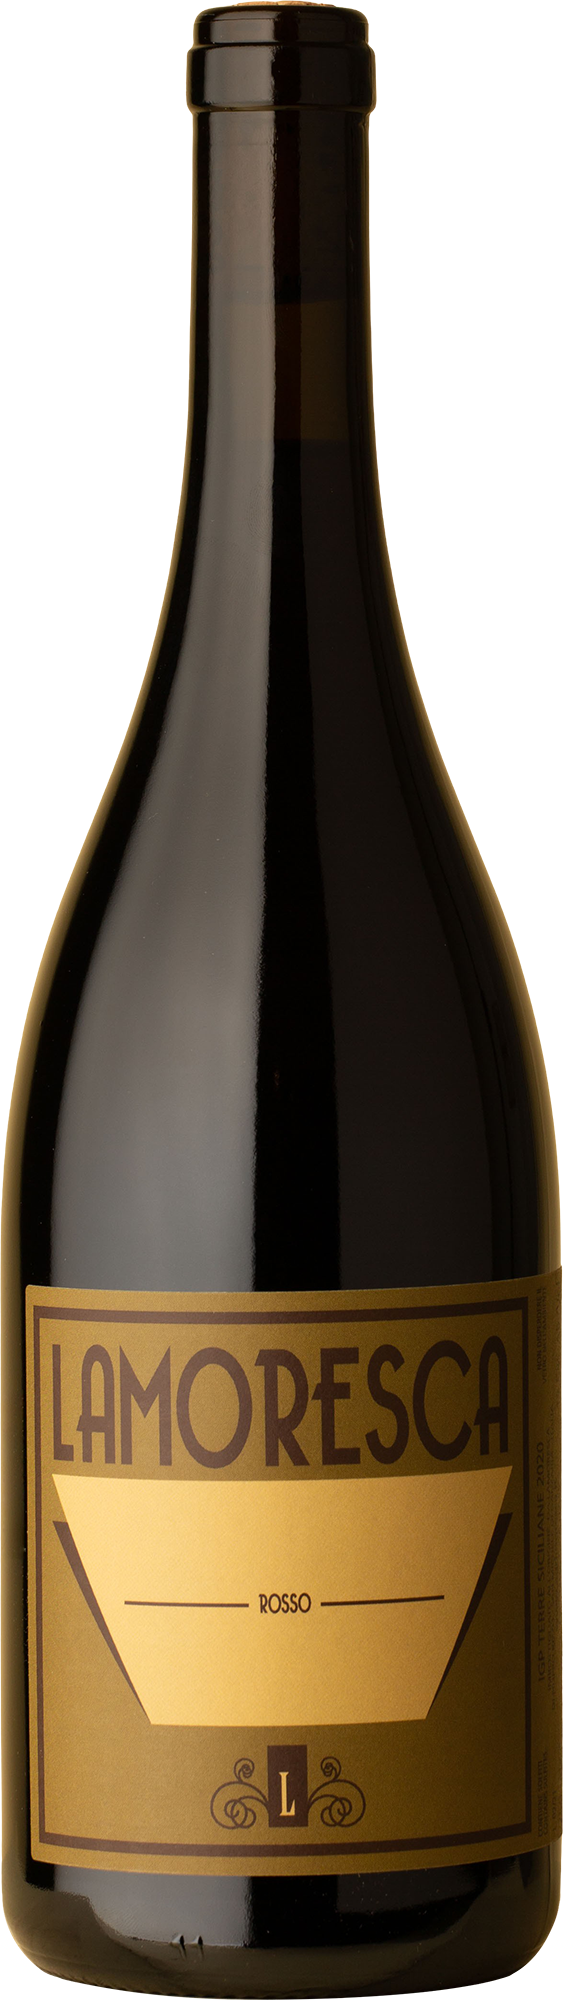 Lamoresca - Rosso Frappato / Nero d'Avola 2020 Red Wine